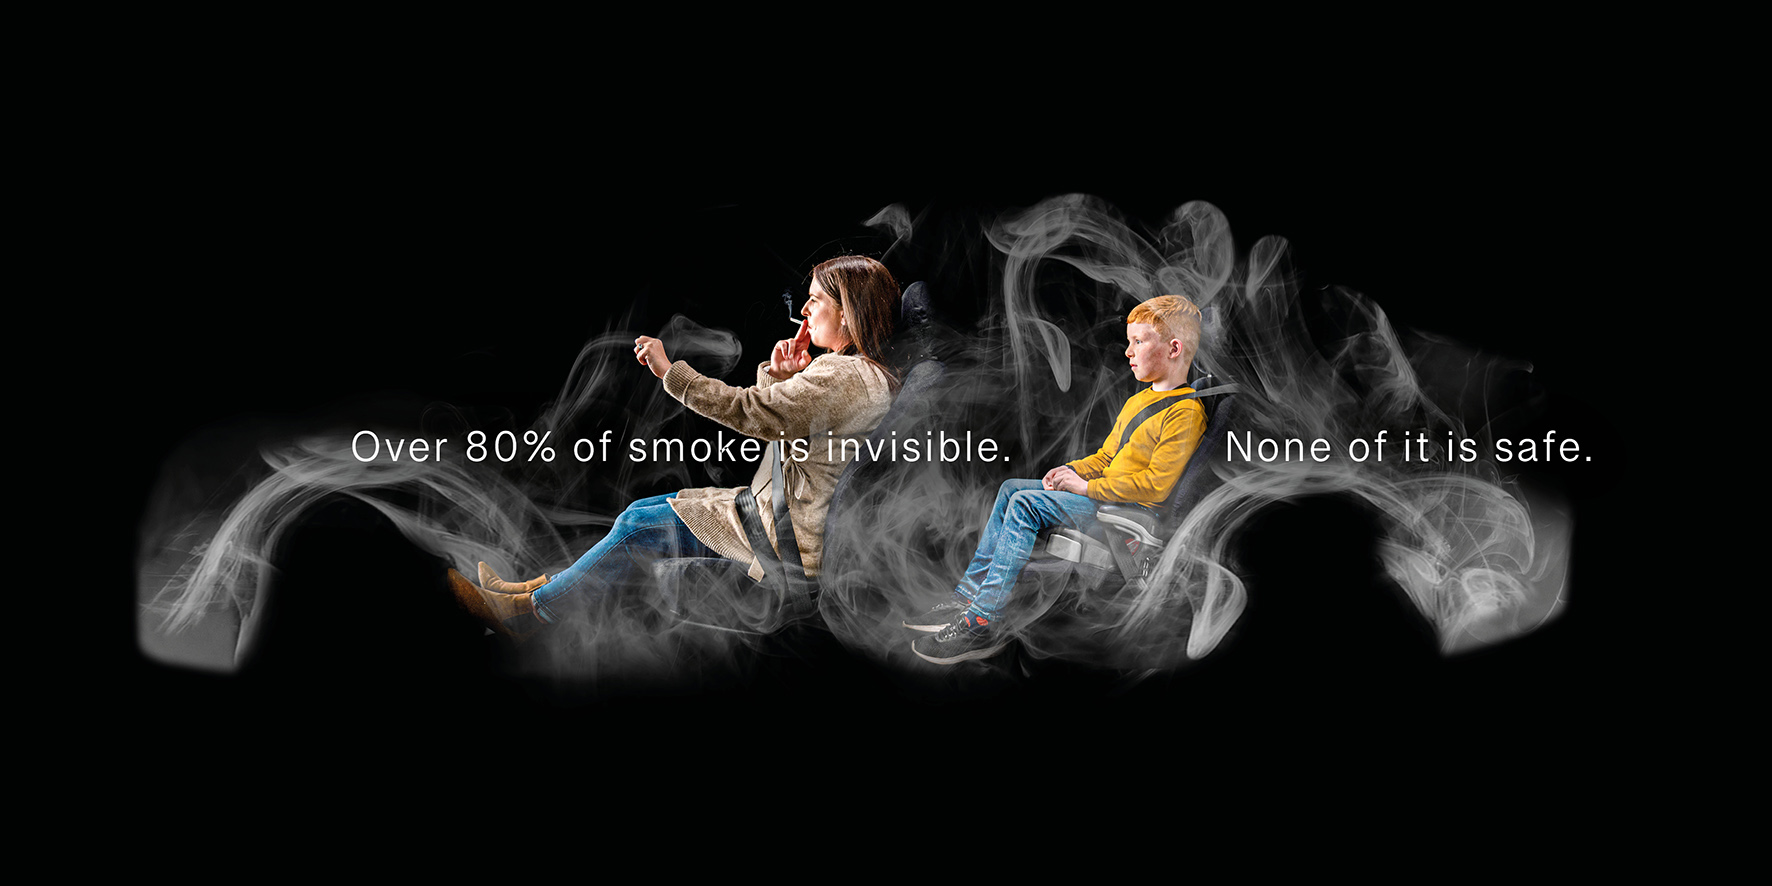 no smoking ads campaigns